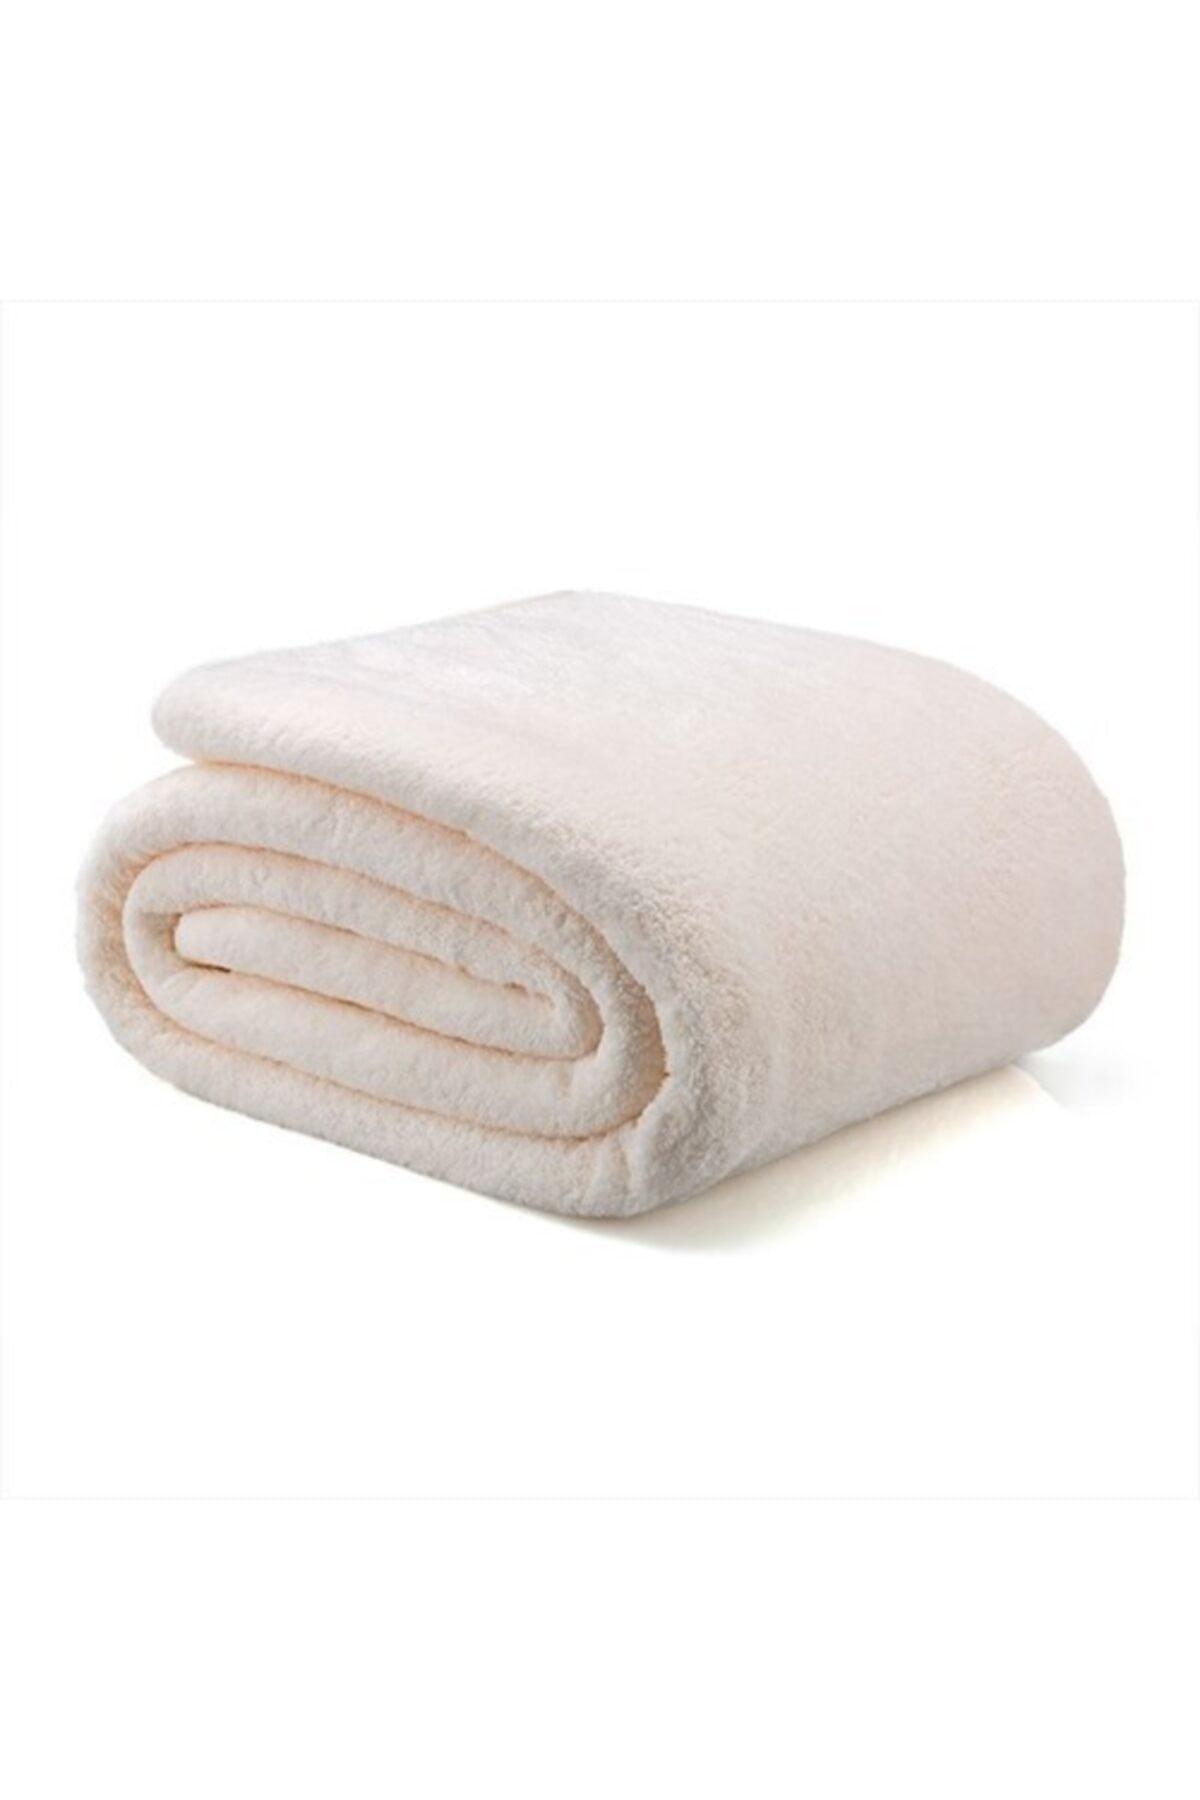 Wellsoft Blanket Television Blanket Plush Fleece Blanket Single 170*230 Cream - Swordslife